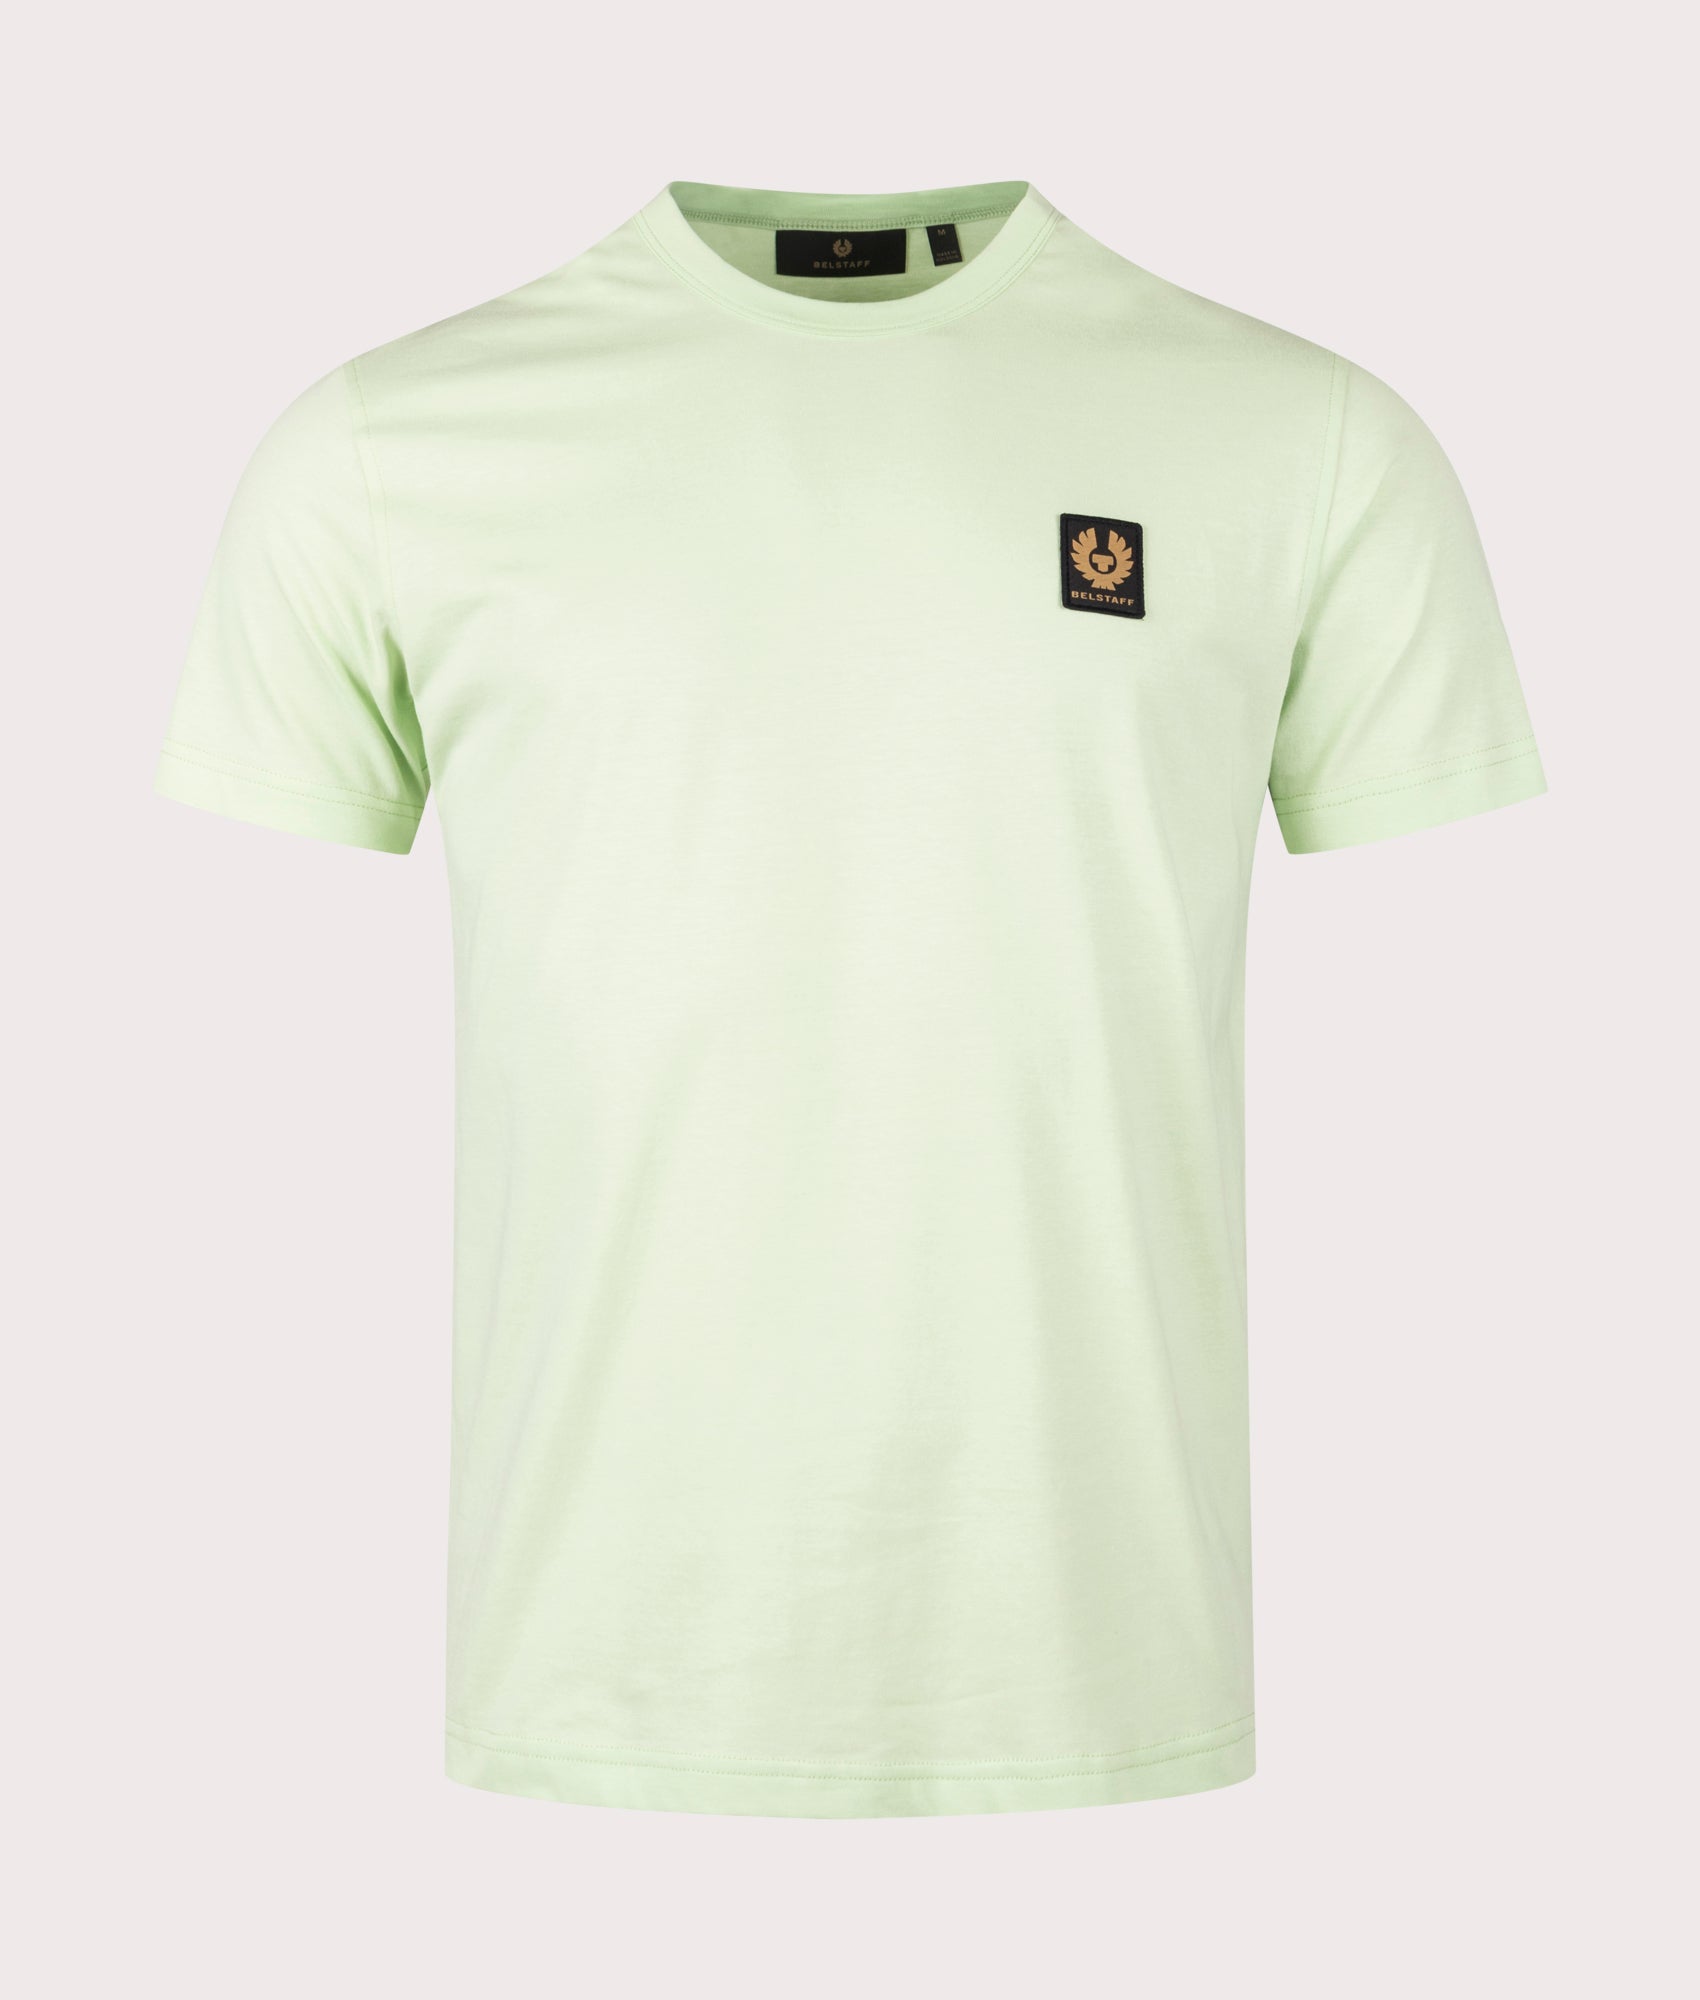 Belstaff Mens Belstaff T-Shirt - Colour: New Leaf Green - Size: Medium